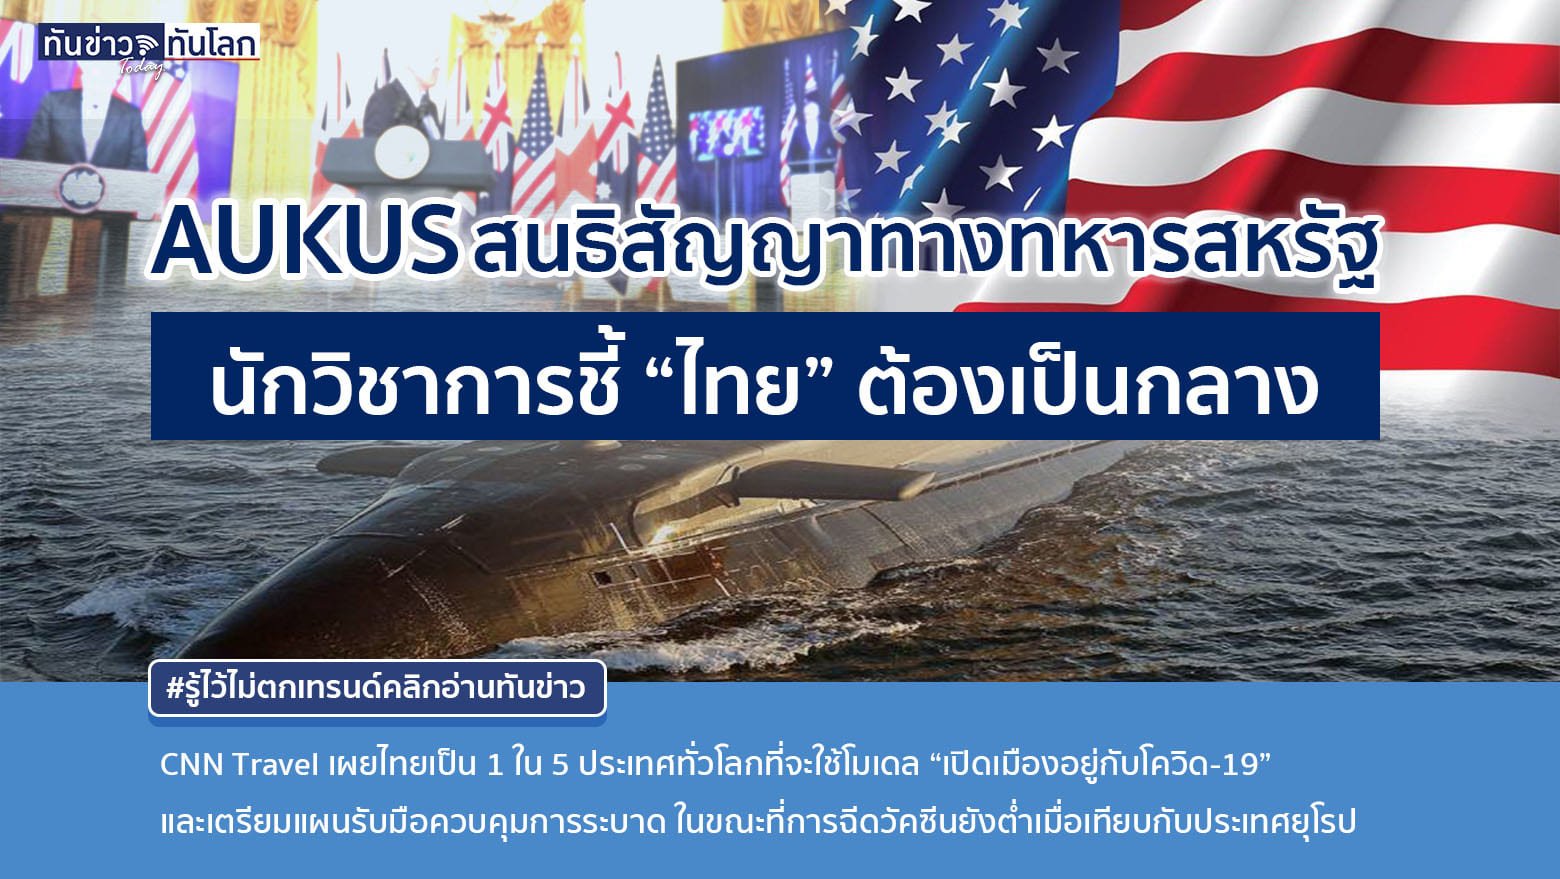 AUKUS, สนธิสัญญาที่ช่วยให้ออสเตรเลีย มีเรือดำน้ำพลังงานนิวเคลียร์ ส่งผลให้พื้นที่โซน อินโด-แปซิฟิก ร้อนขึ้นทันที !! นักวิชาการไทยเตือนรัฐต้องเป็นกลาง